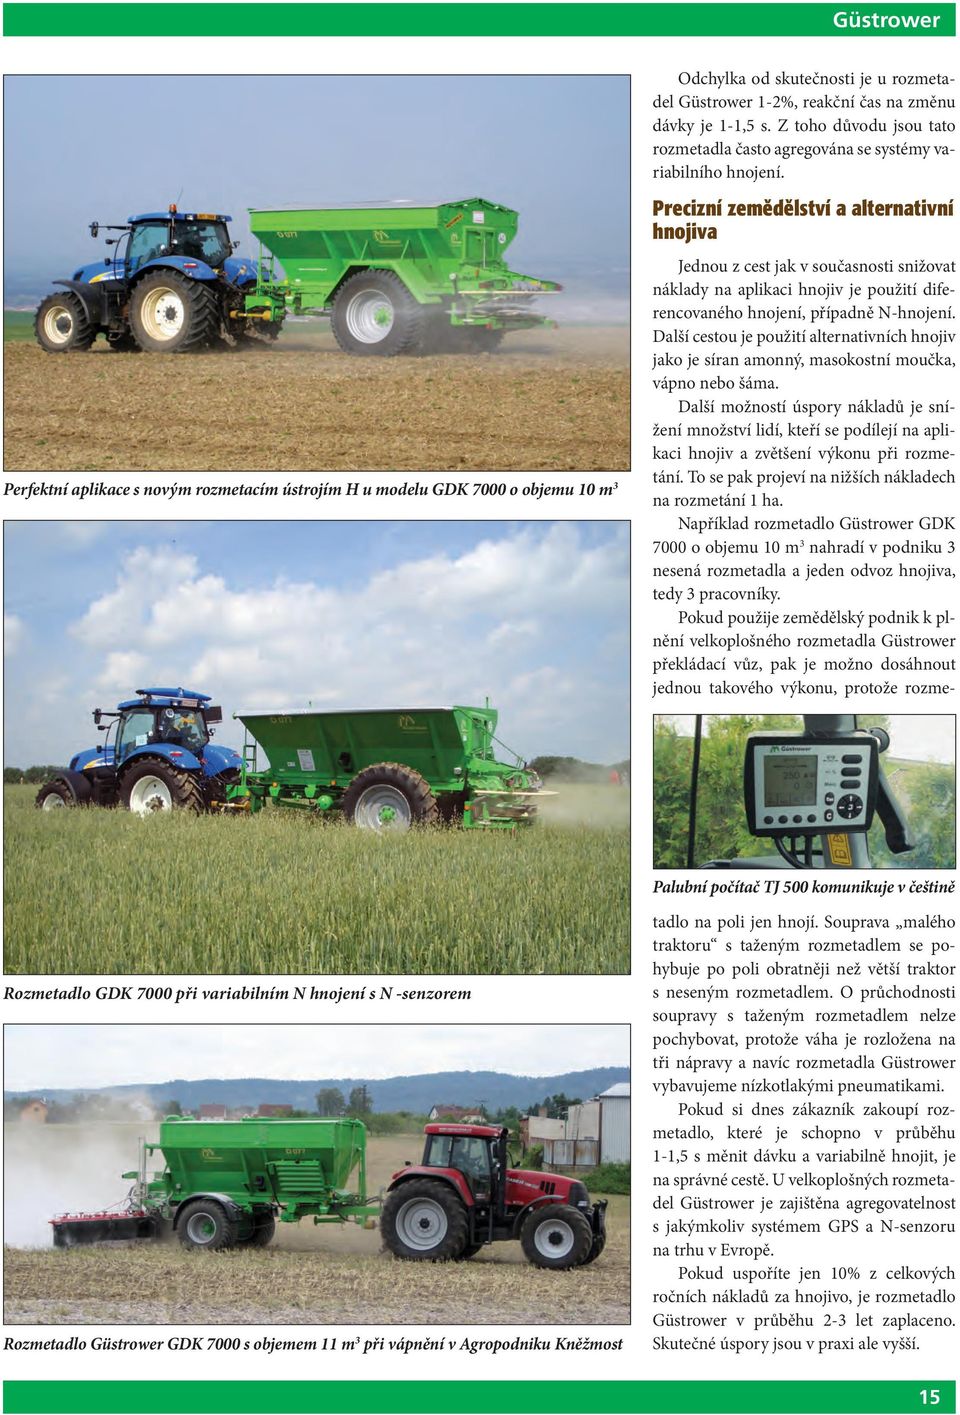 Precizní zemědělství a alternativní hnojiva Palubní počítač TJ 500 komunikuje v češtině Rozmetadlo GDK 7000 při variabilním N hnojení s N -senzorem Rozmetadlo Güstrower GDK 7000 s objemem 11 m 3 při